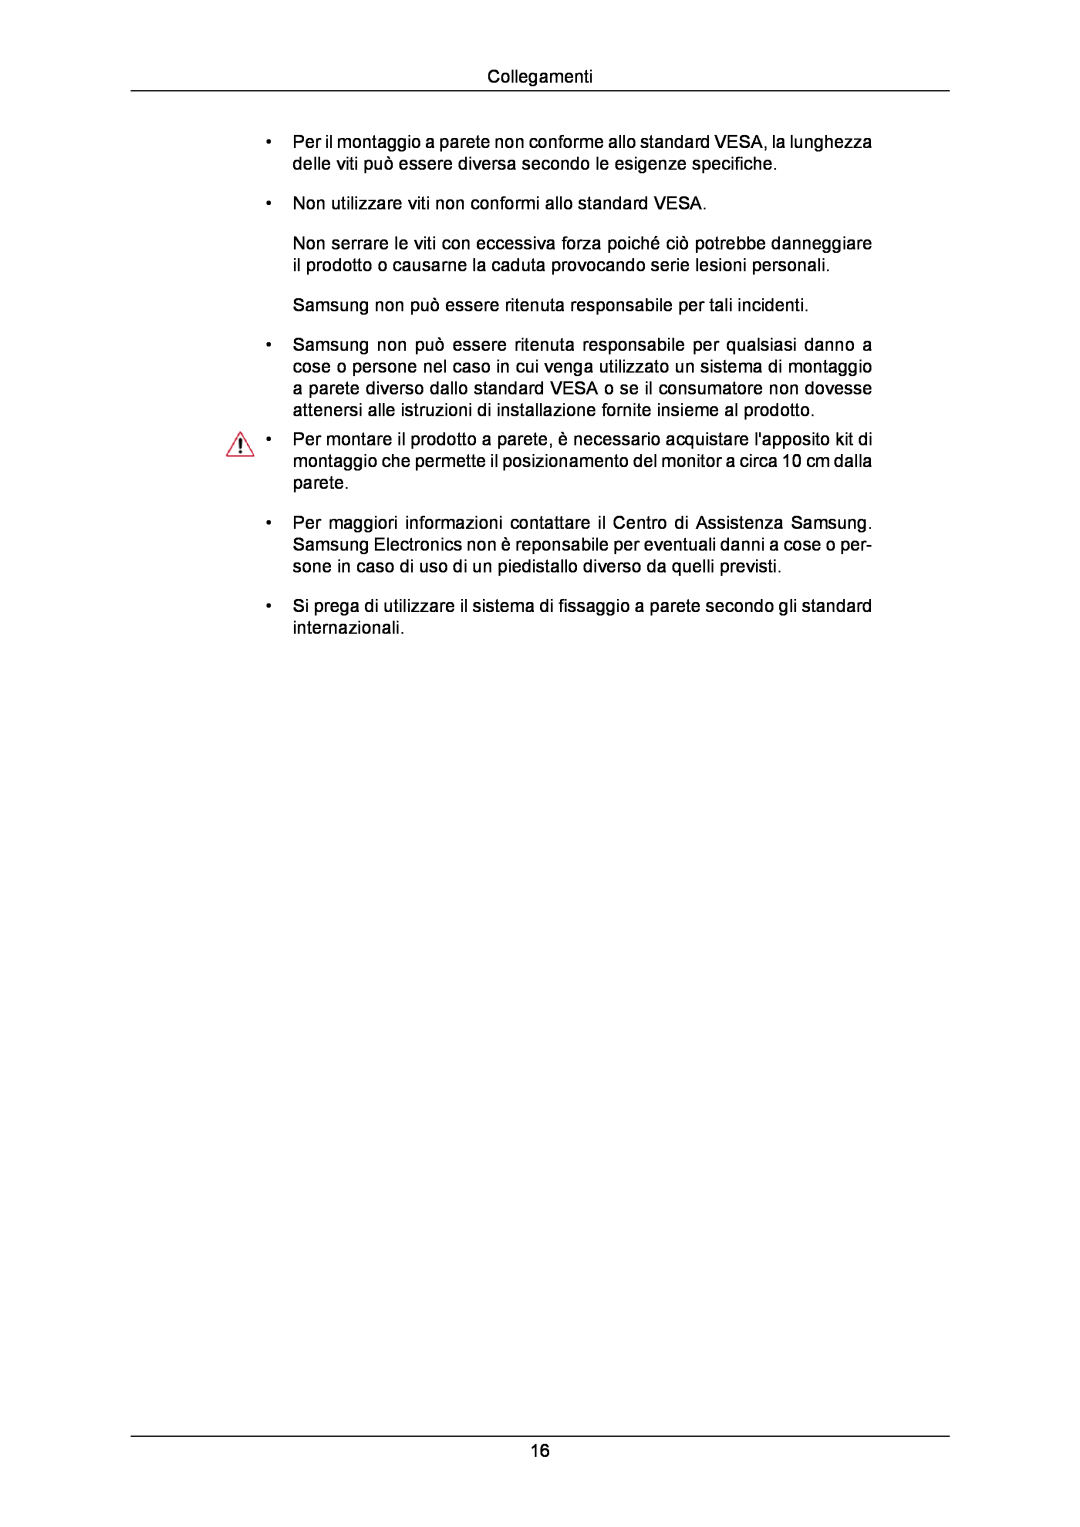 Samsung LS24CMKKFV/EN manual Collegamenti, Non utilizzare viti non conformi allo standard VESA 